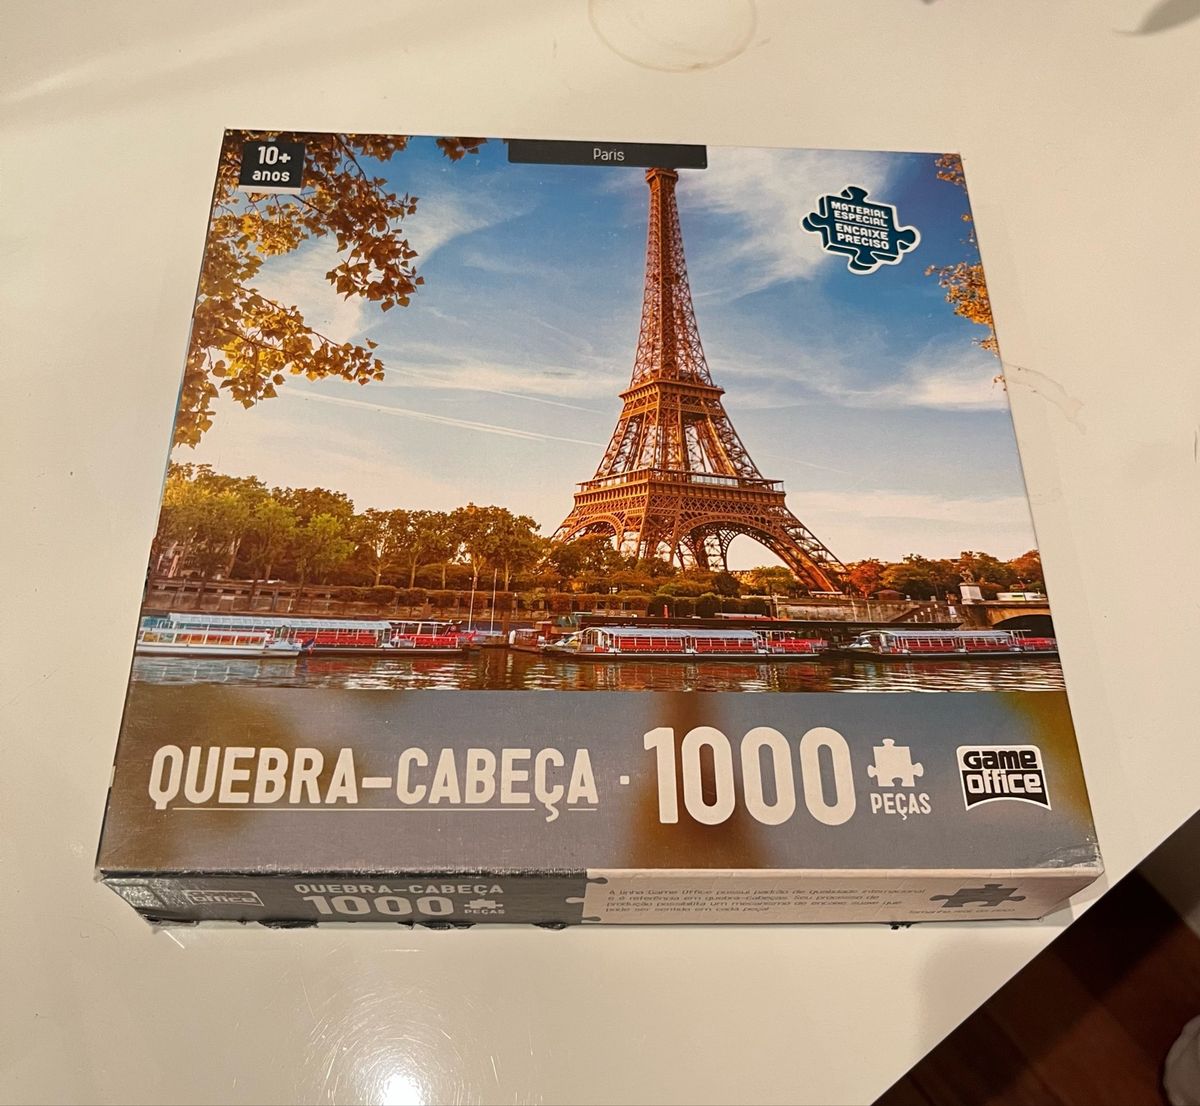 Quebra-Cabeça - 1000 Peças - Game Office - Paris - Toyster